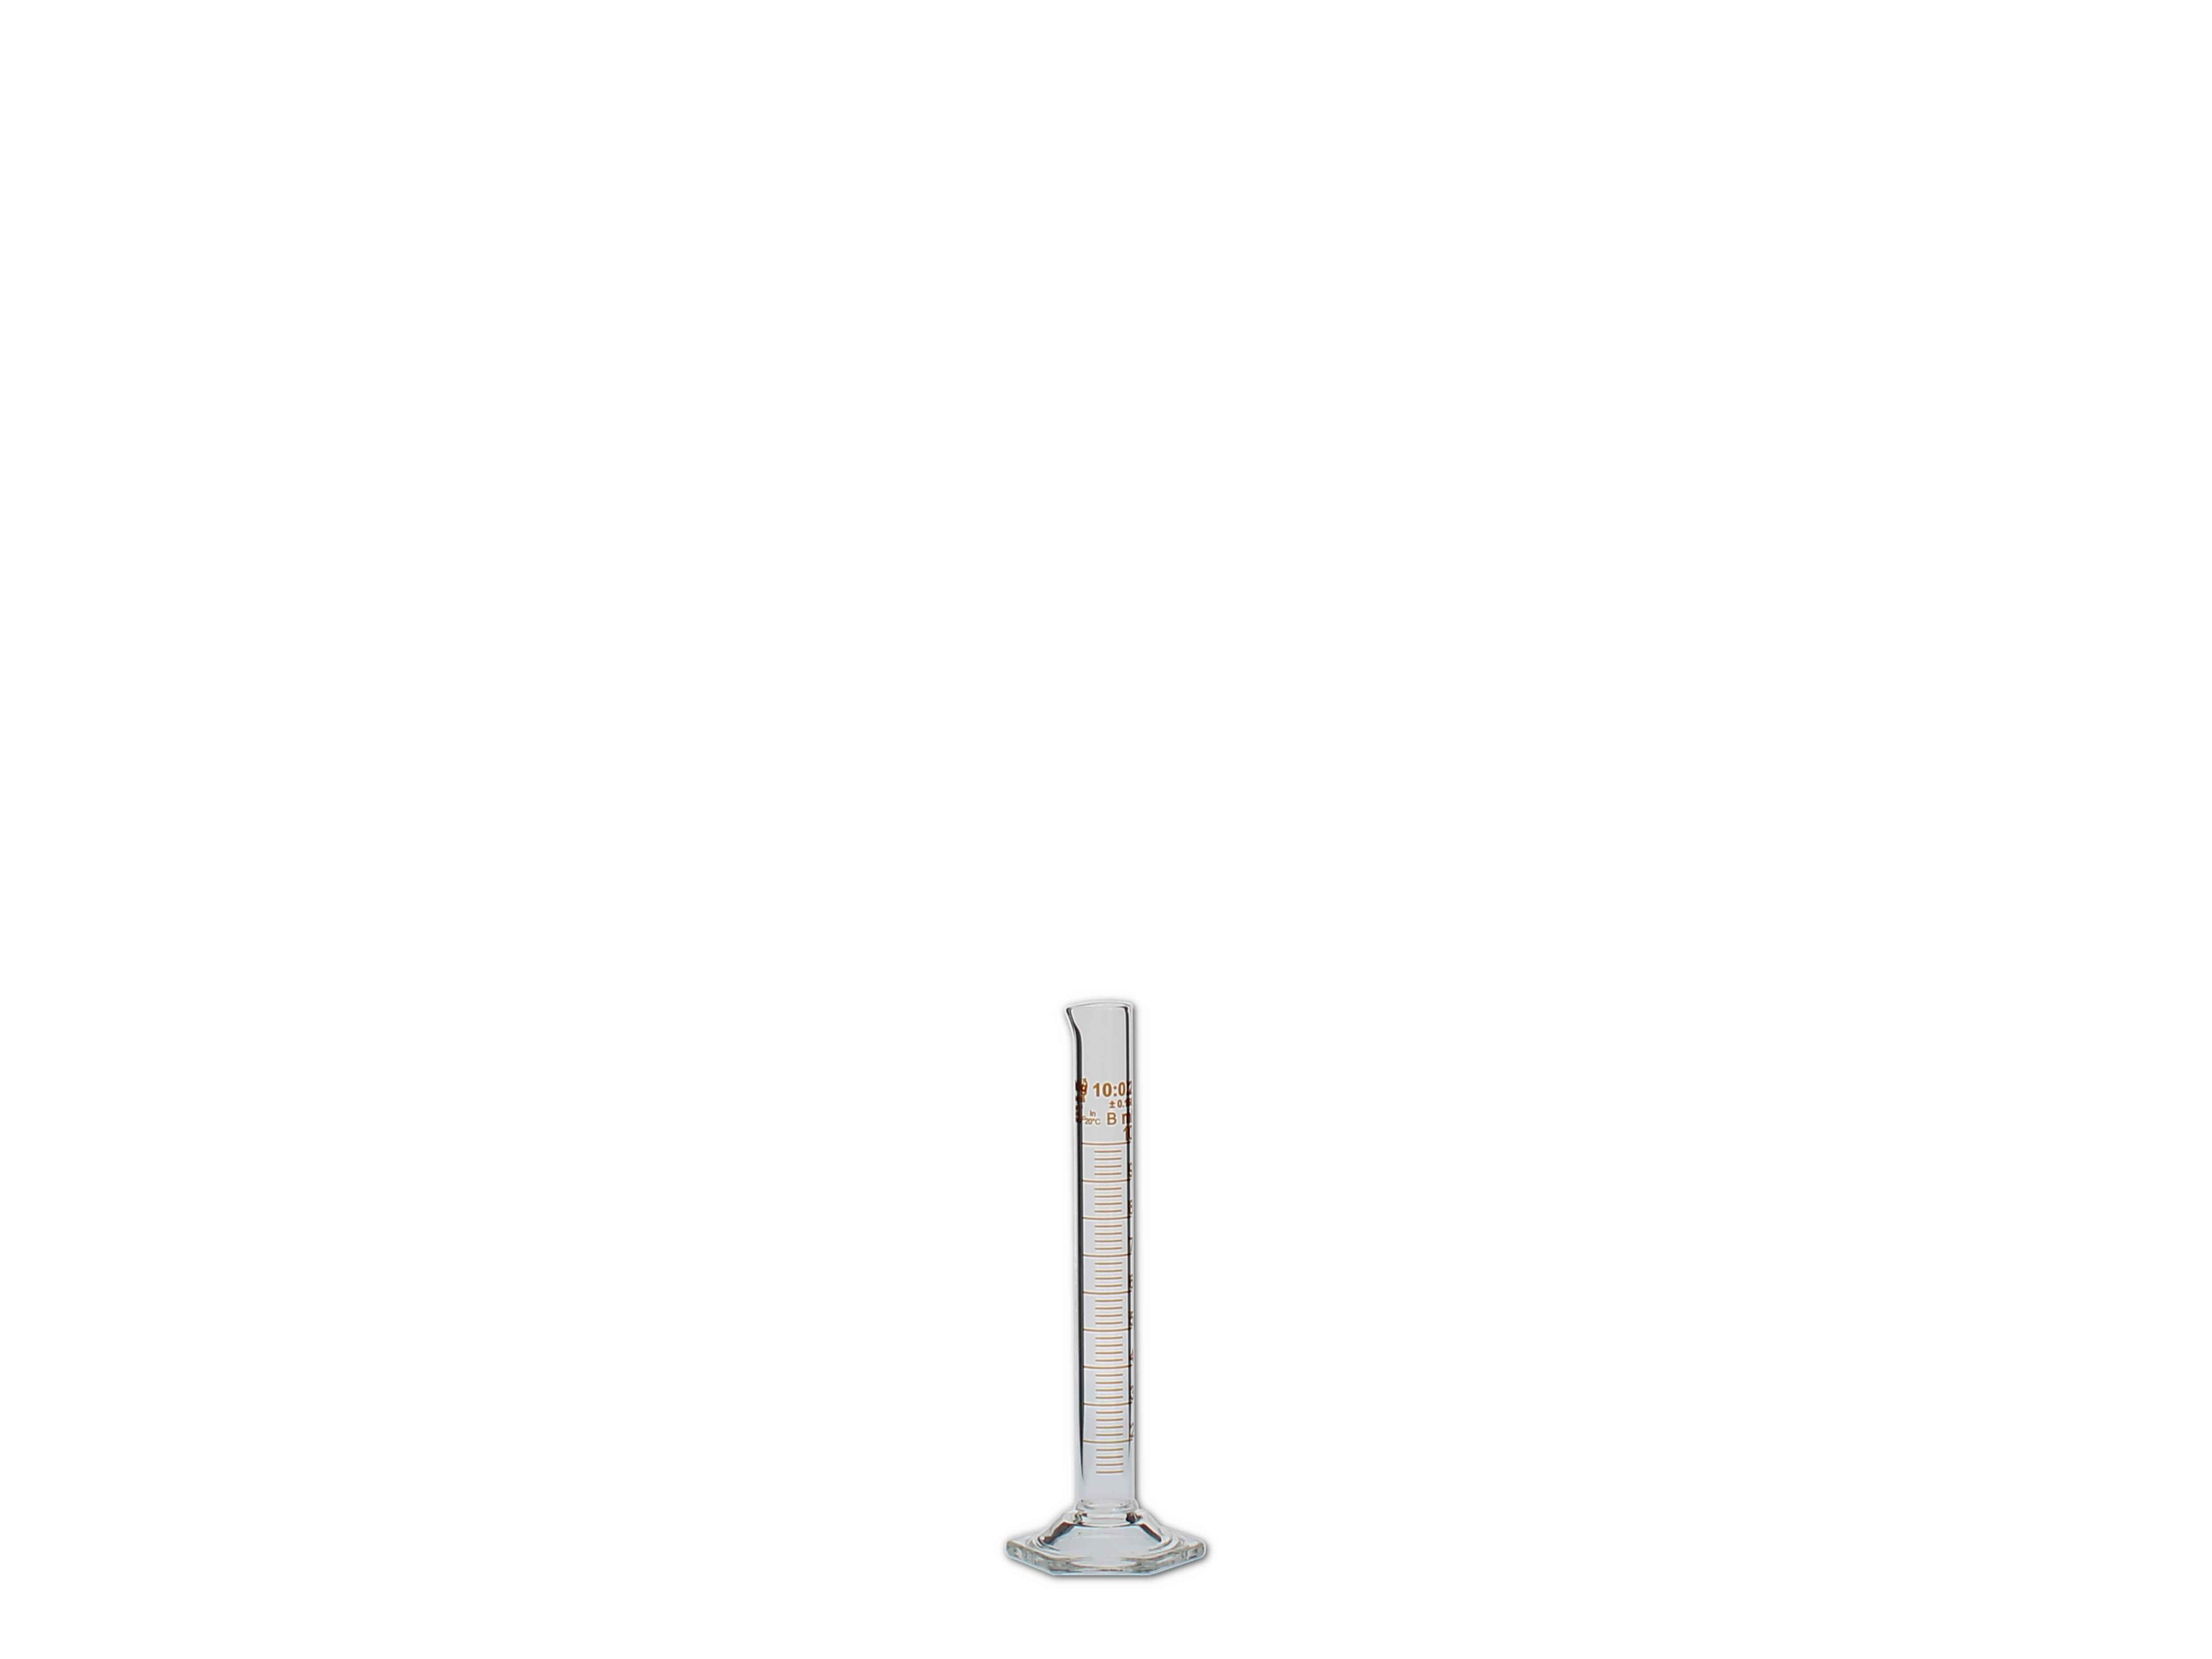    Messzylinder, Glas, graduiert - 10ml (hohe Form)